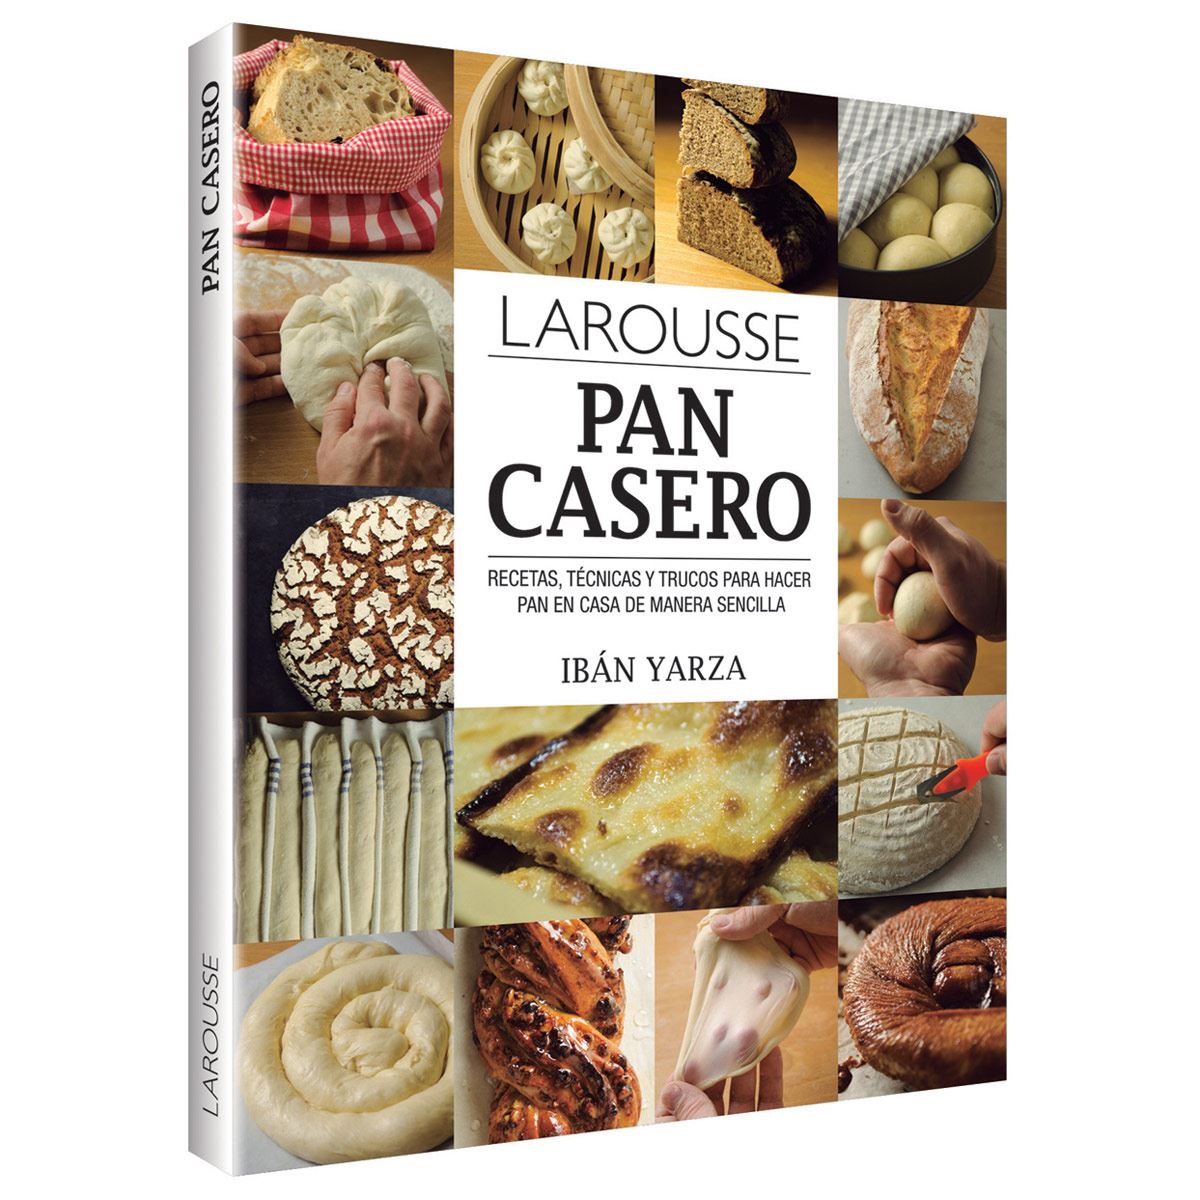 Industria Panificadora El Pan Casero - Dulces, suaves y muy  deliciosos,🧁🥮🍰🎂🍮El Pan Casero ¡Disfruta nuestros productos en casa!  Pedidos e informes:  www.elpancasero.com